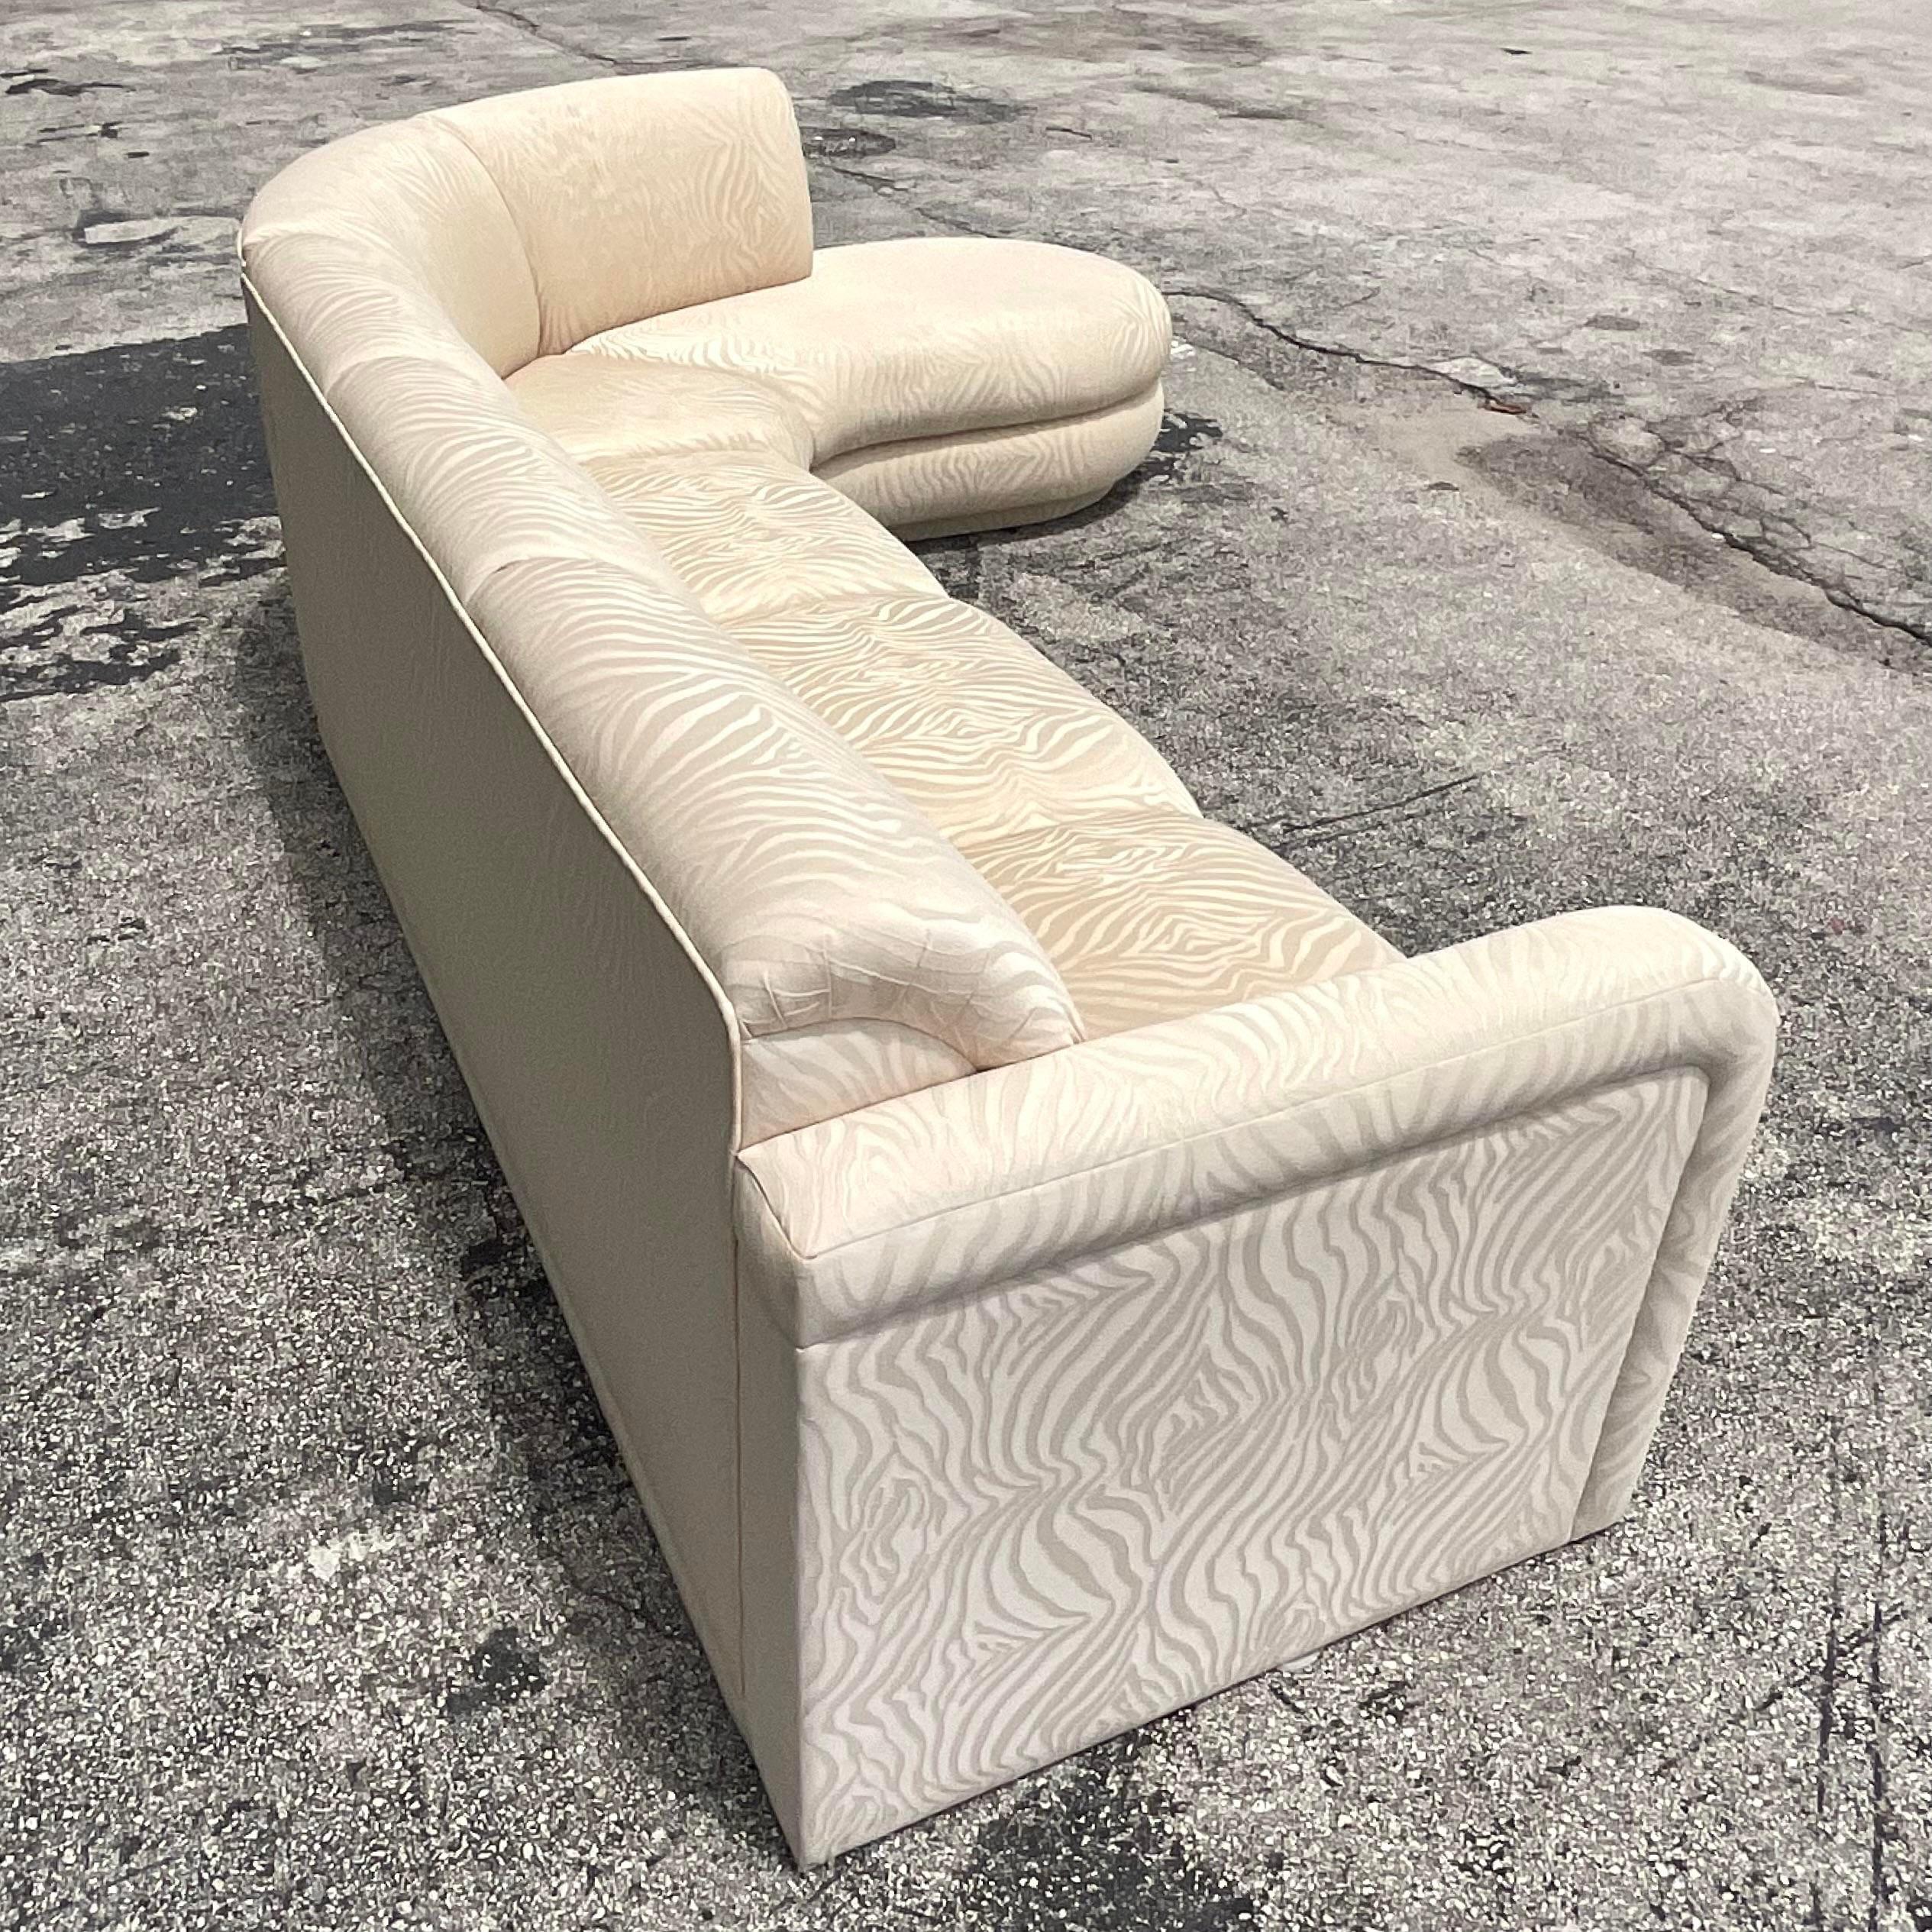 Ein fabelhaftes Boho-Sofa im Vintage-Stil. Ein schicker gewebter Jacquard in einem Ton in Ton gehaltenen Zebramuster. Teilt sich in zwei Abschnitte. Erworben aus einem Nachlass in Palm Beach.

Linke Seite 84x 20,5x32,5
Chaise Seite 84x77x32.5